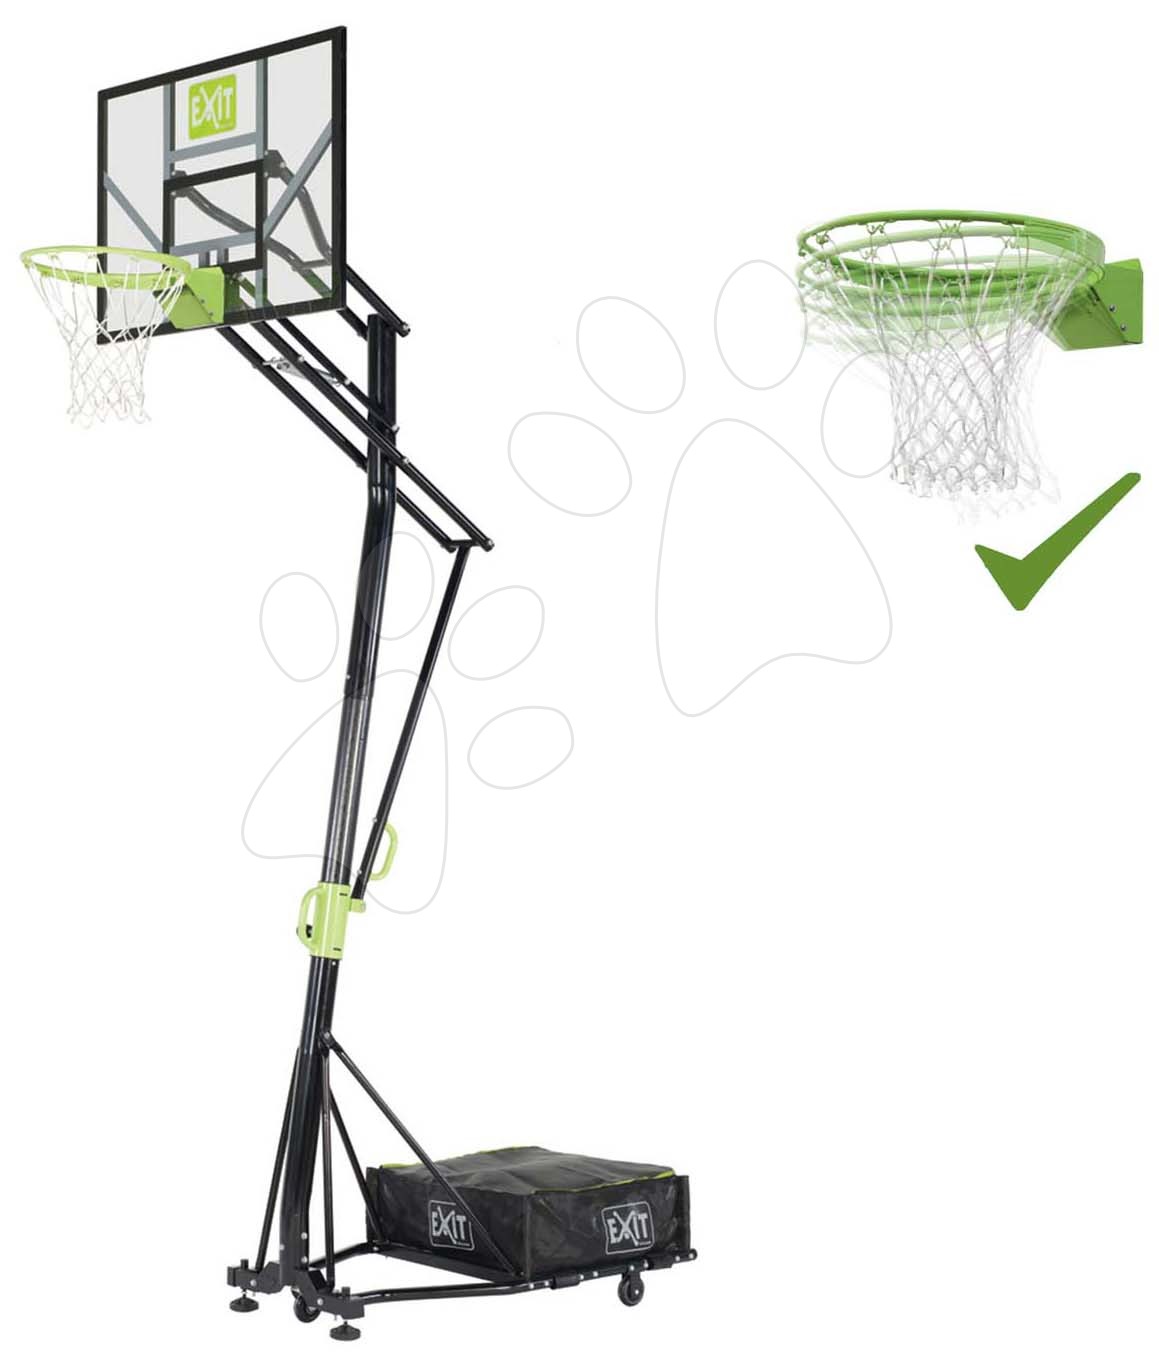 Kosárlabda konstrukció palánkkal és flexibilis kosárral Galaxy Portable Basketball Exit Toys acél áthelyezhető magasságilag állítható